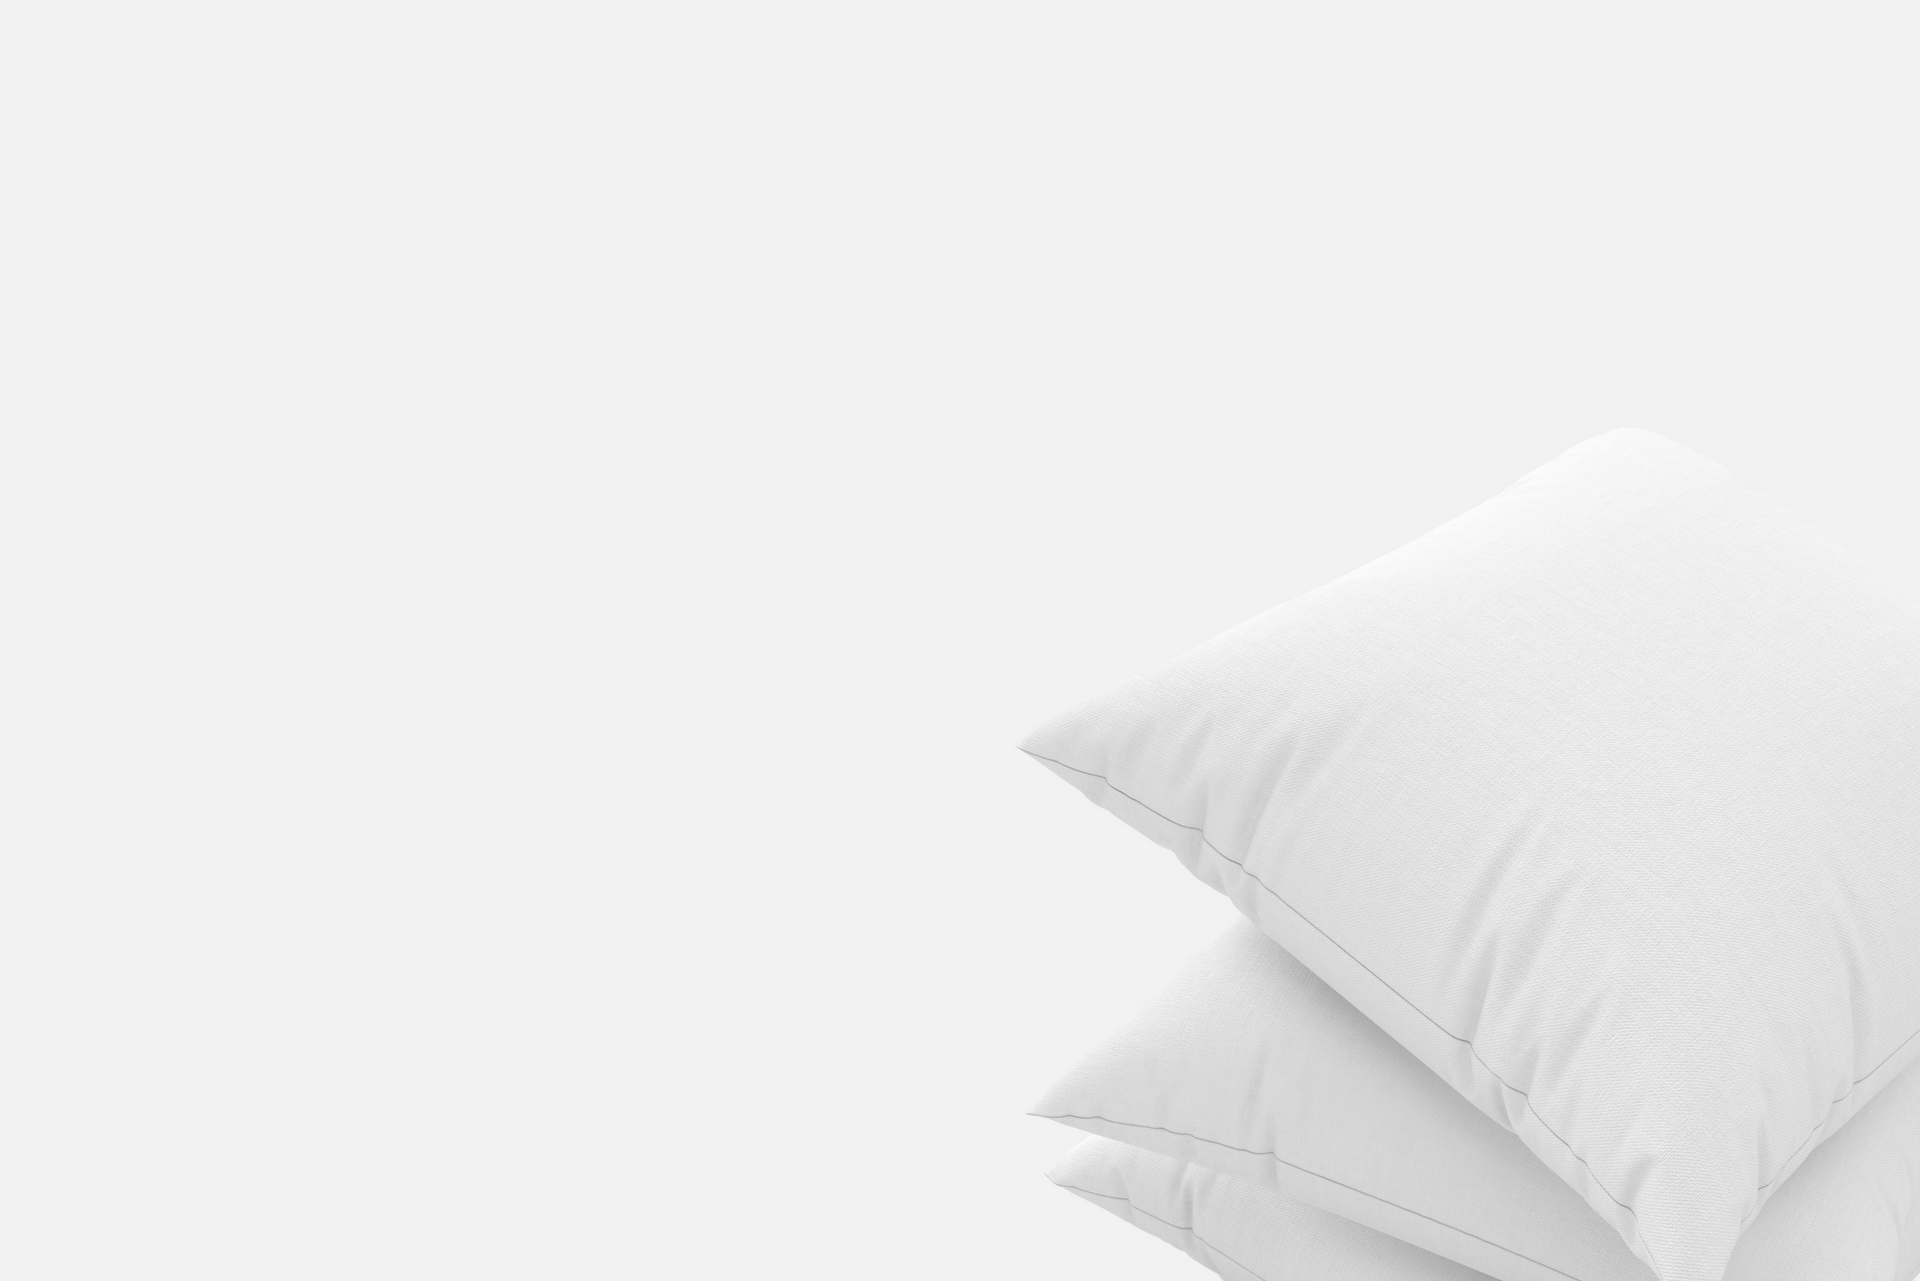 white-pillows